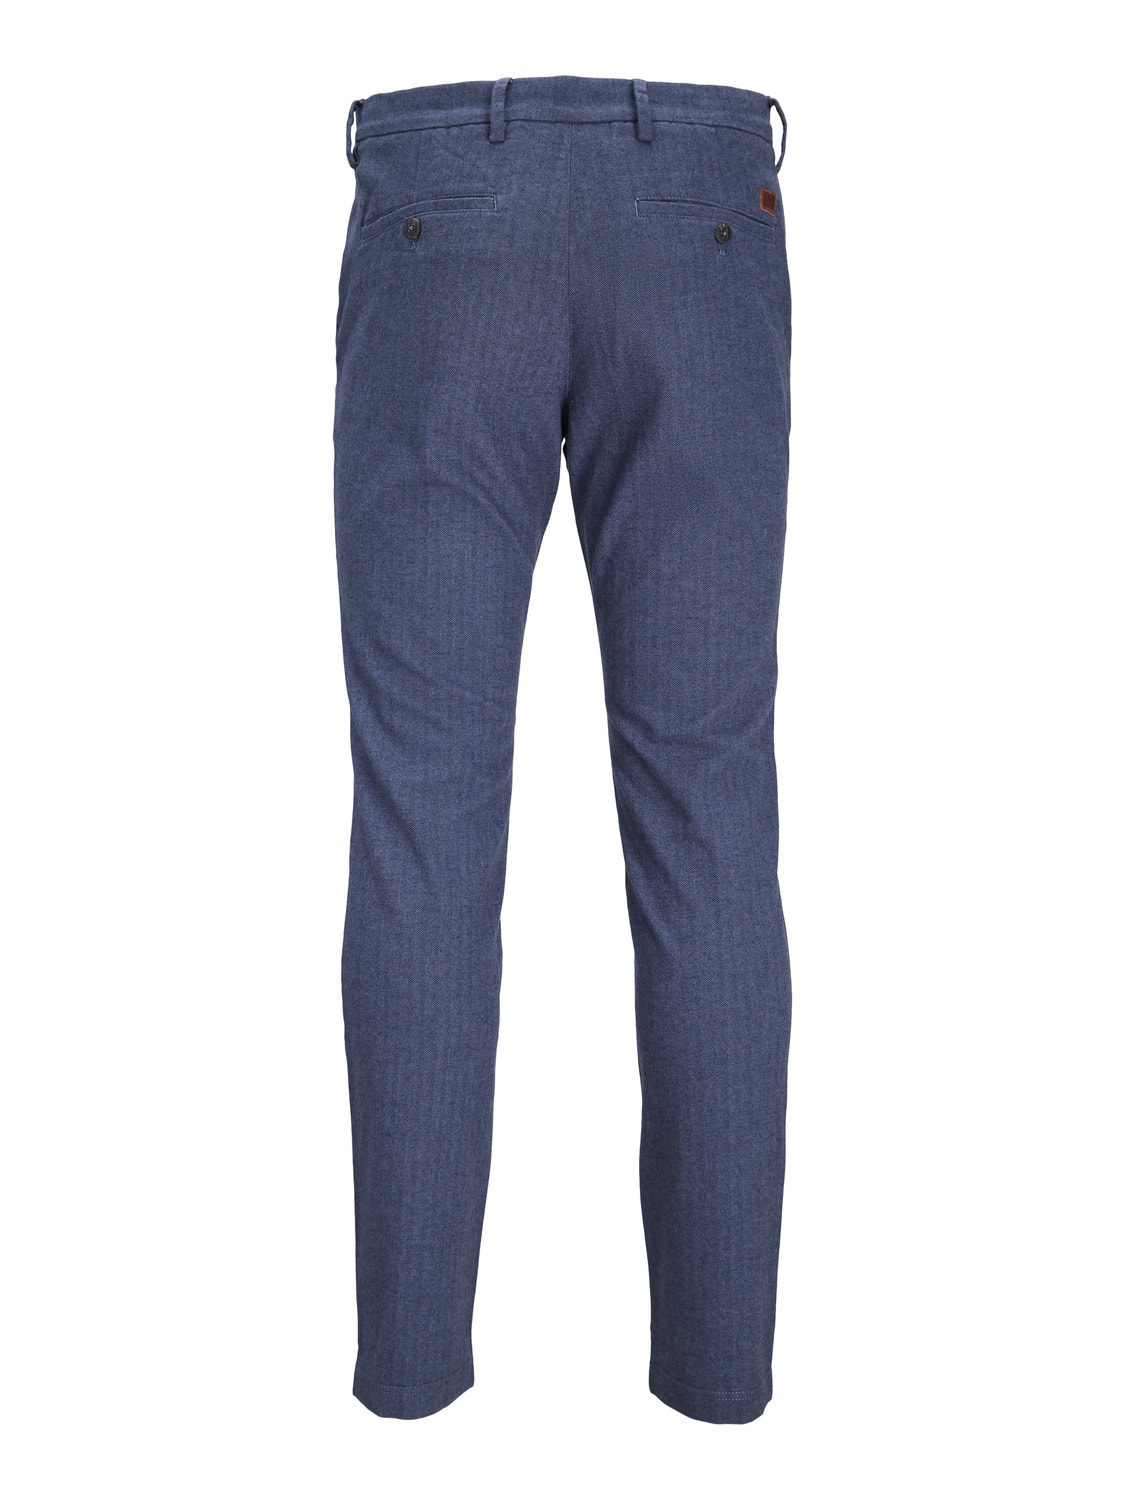 Jack & Jones Παντελόνι Slim Fit Chinos -Navy Blazer - 12237541